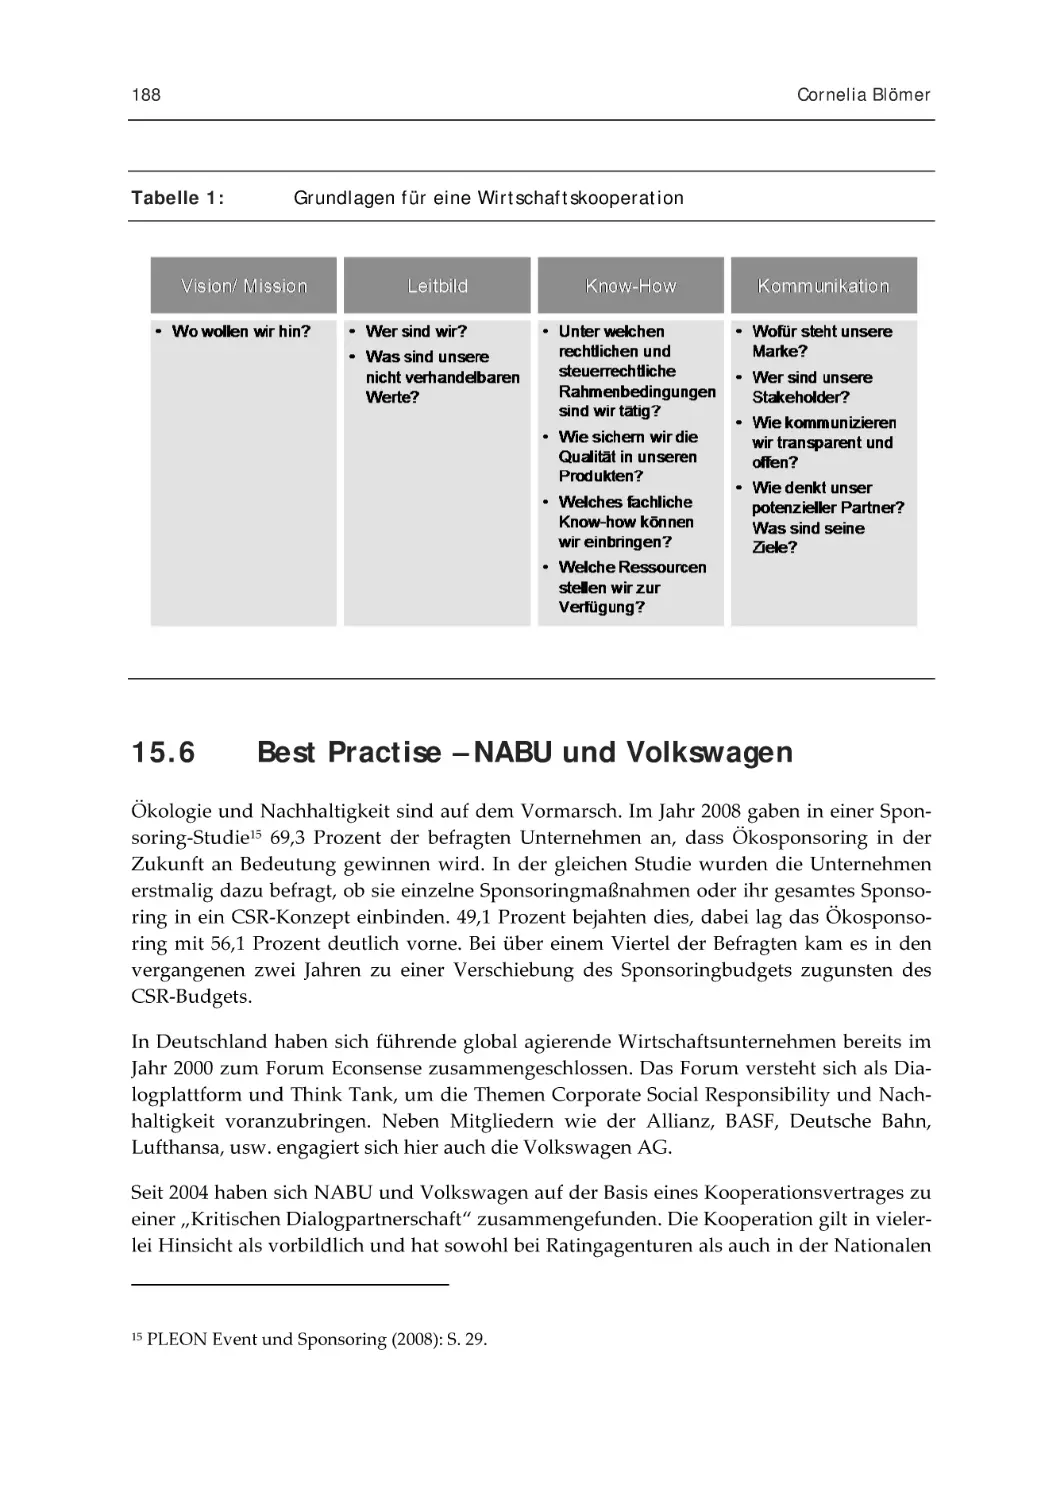 15.6 Best Practise – NABU und Volkswagen